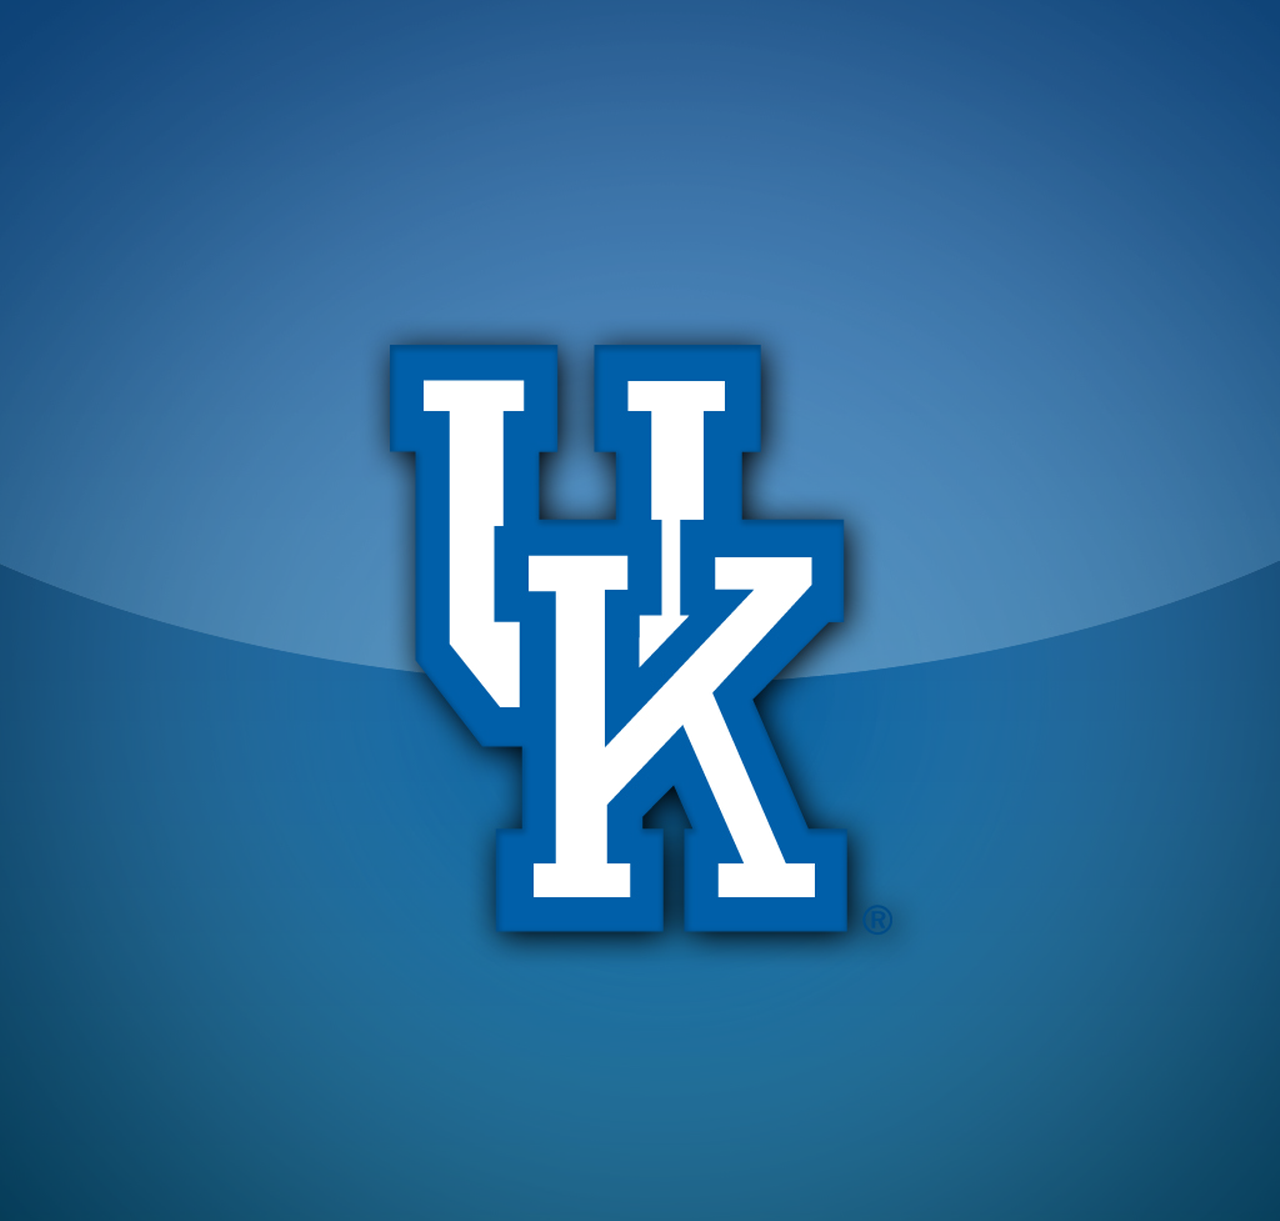 Hd Wallpapers Kentucky Wildcats Basketball Desktop 1280 x 1221 488 kB